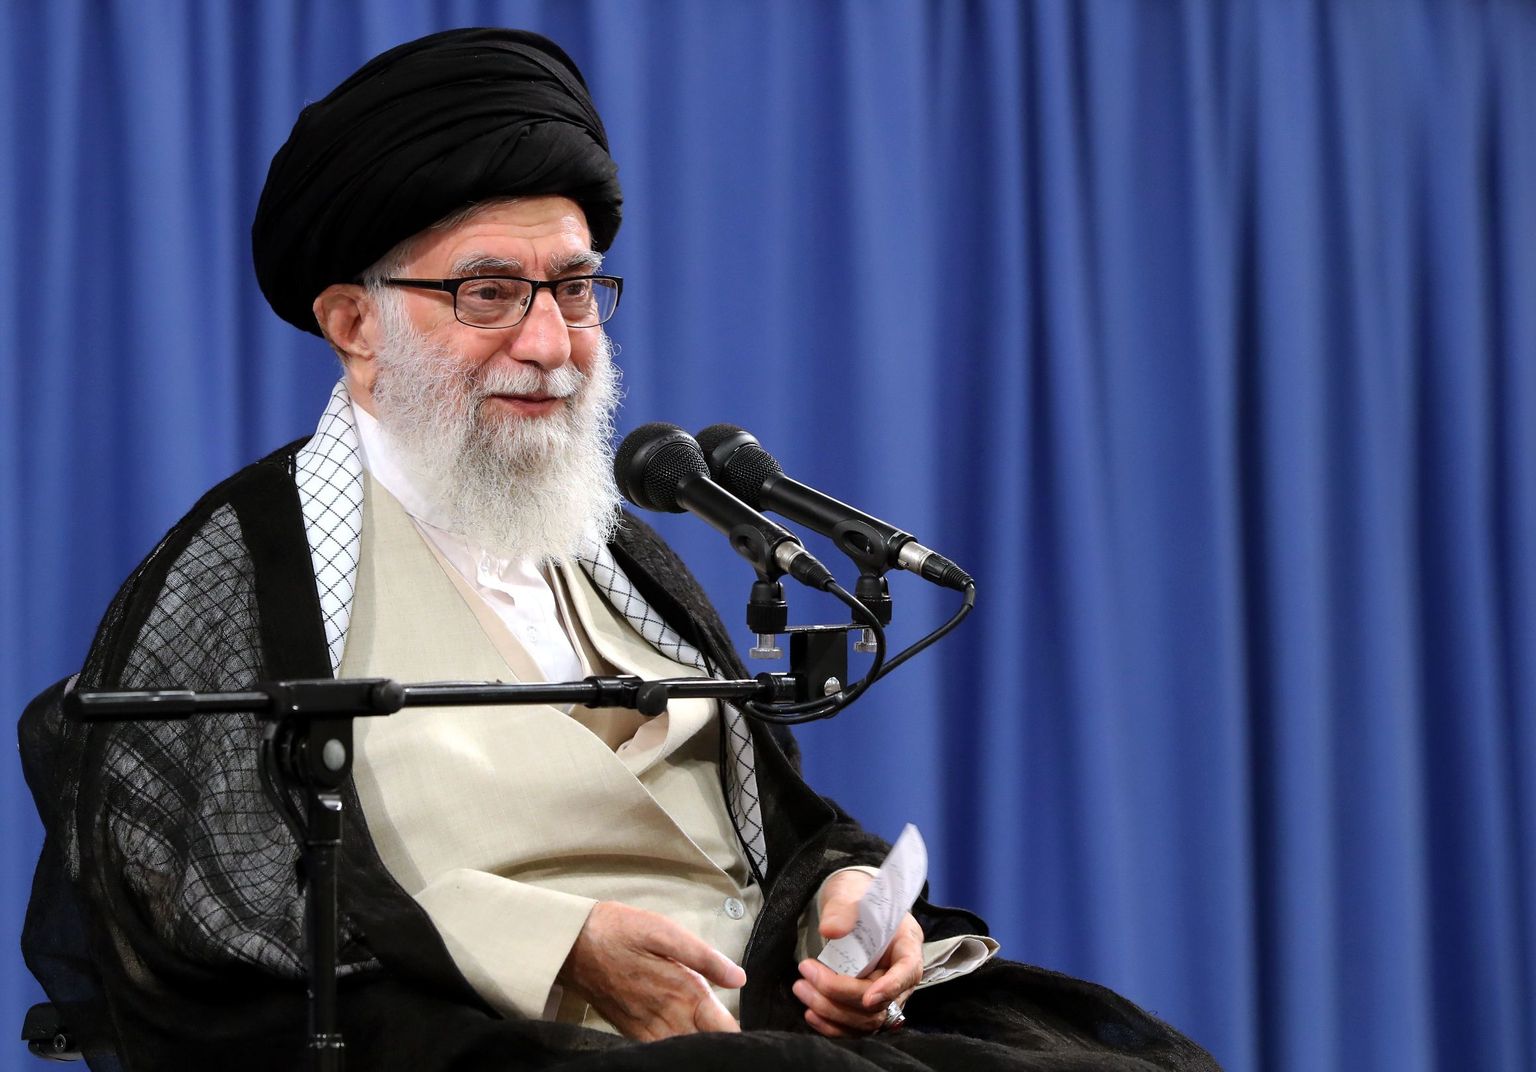 Iraani kõrgeim juht ajatolla Ali Khamenei teisipäeval Teheranis kohtumisel vaimulikega fotol, mille tegi avalikuks Khamenei kantselei.